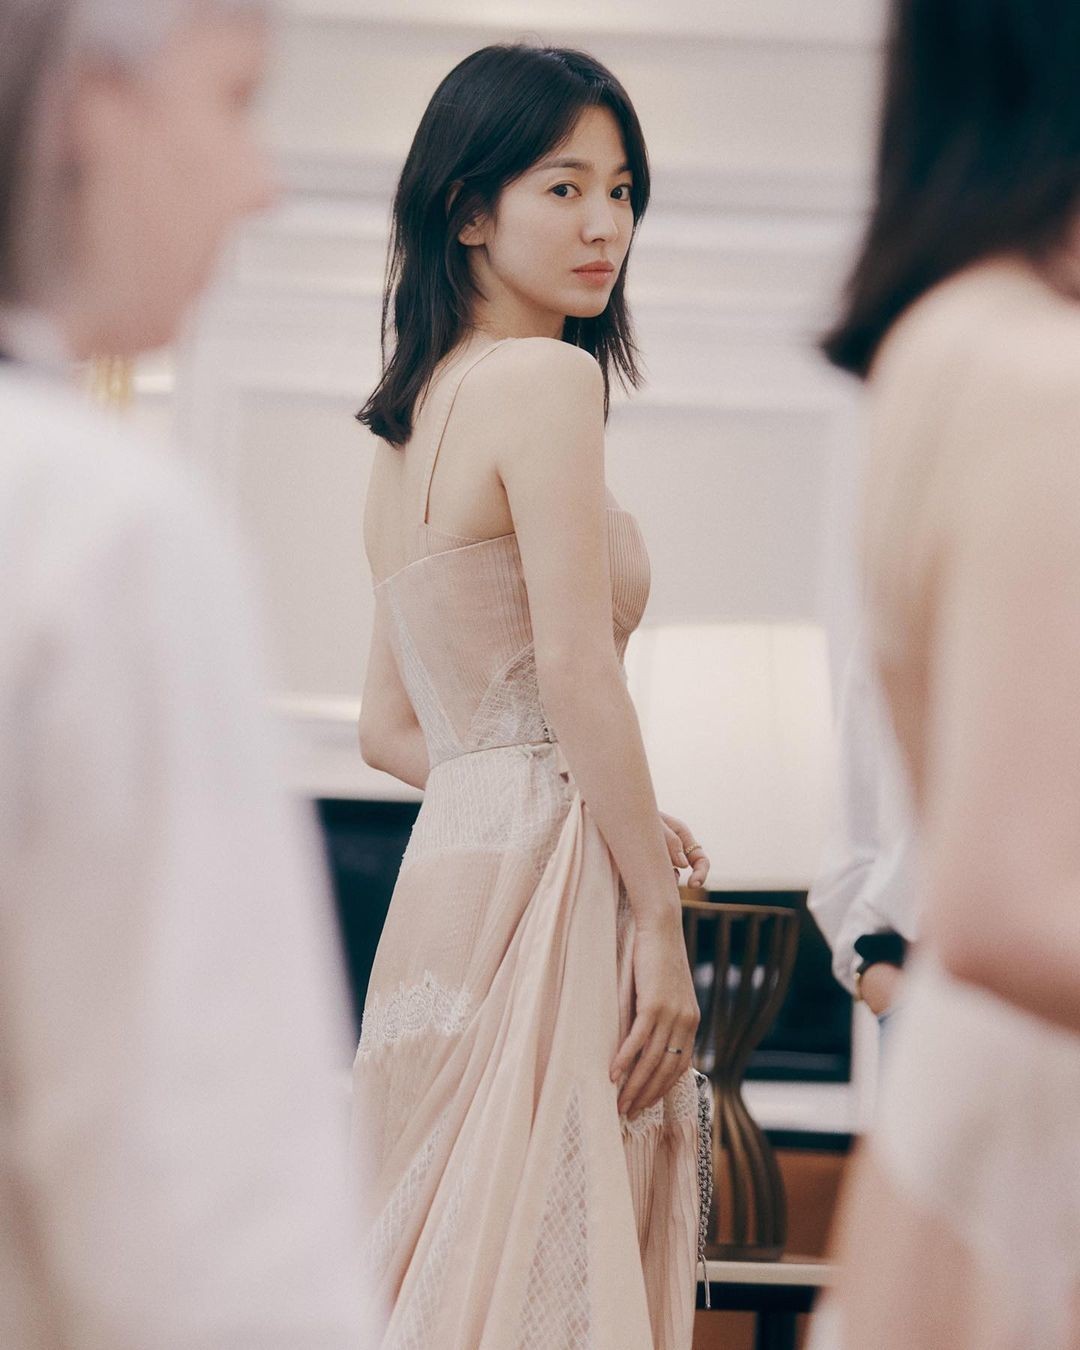 Cát-xê quảng cáo 'khủng' của Song Hye Kyo